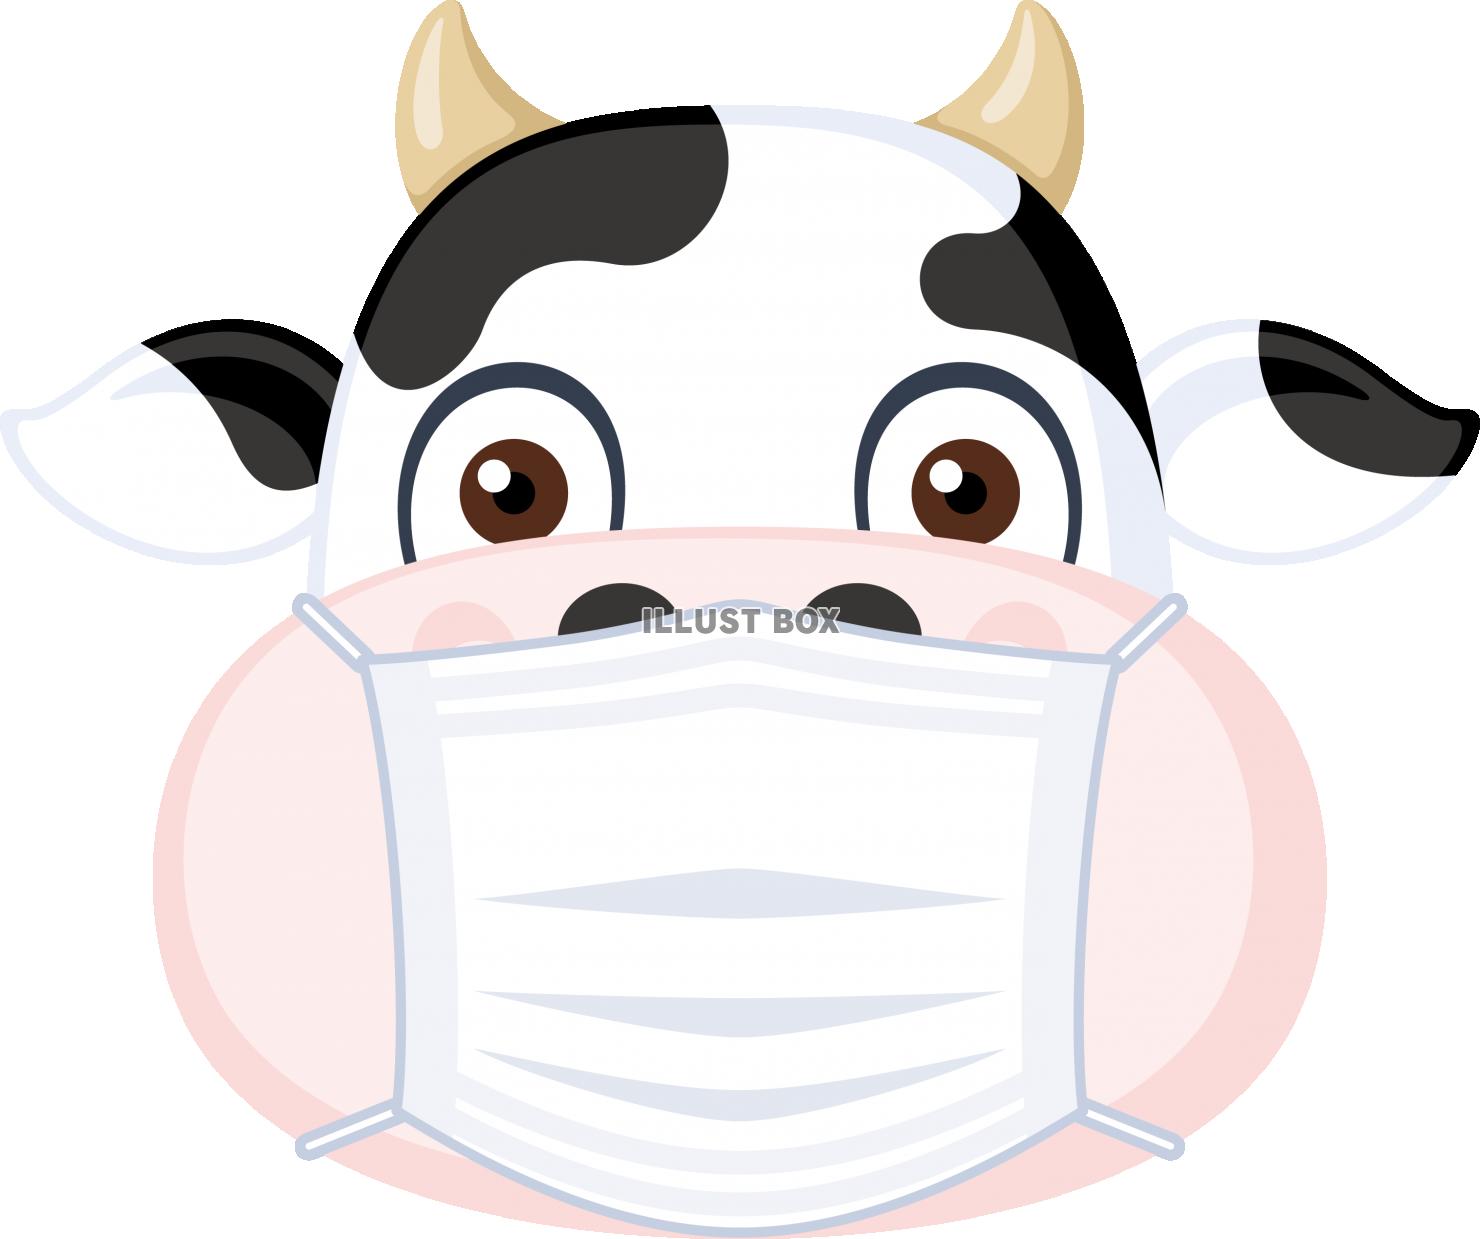 マスクの牛キャラクター2021年賀状素材